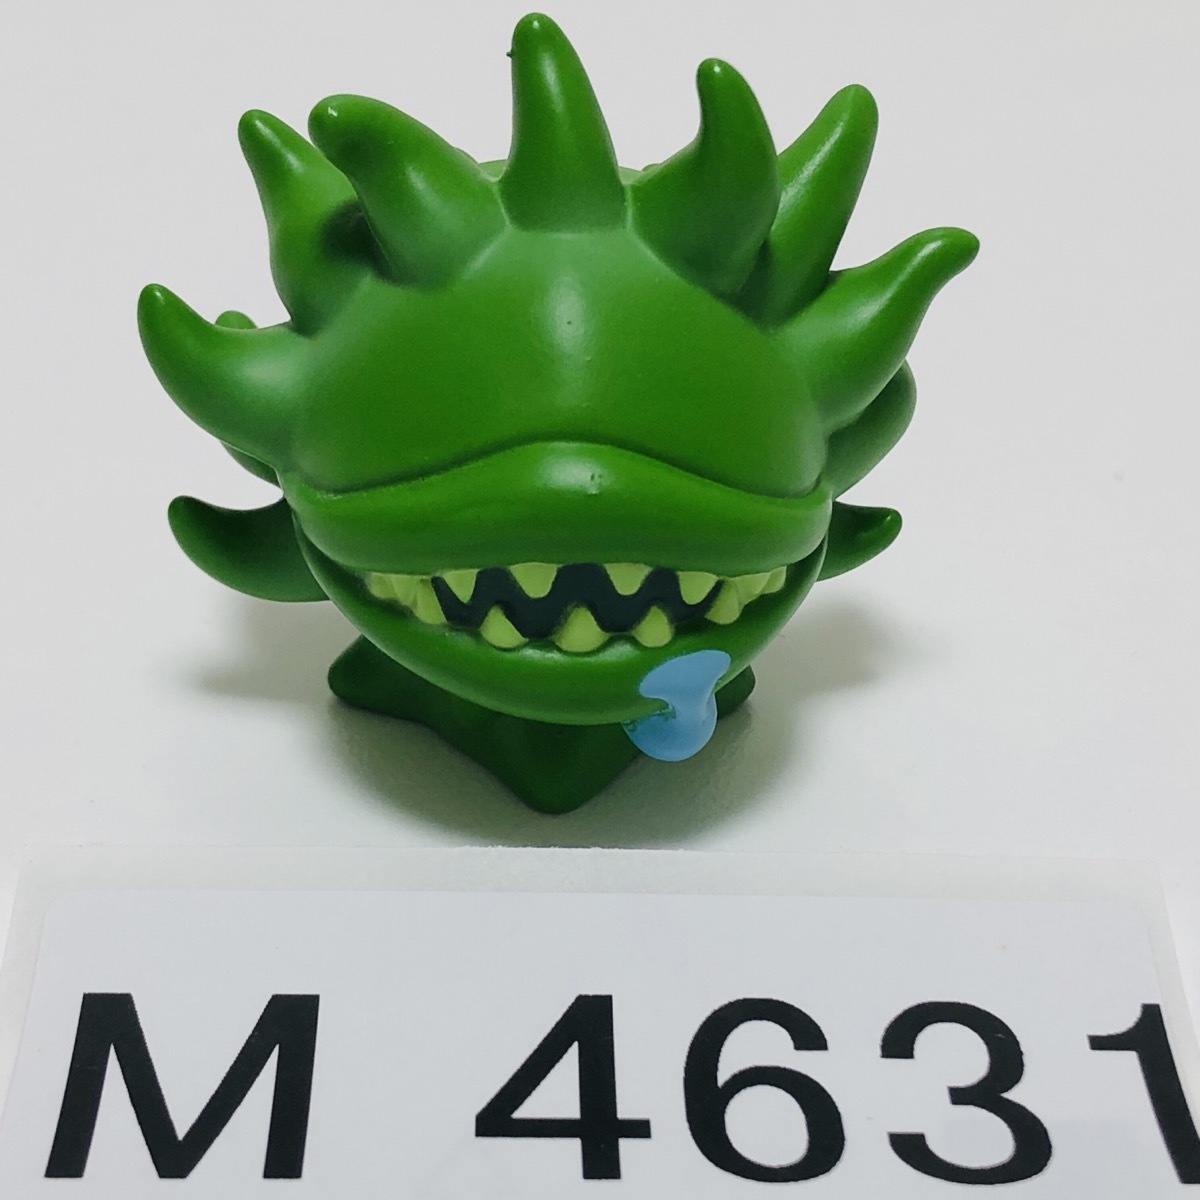 M4631 * б/у прекрасный товар быстрое решение *moruboru клапан(лампа) FF14 Final Fantasy XIV Mini on эмблема коллекция * мини фигурка 